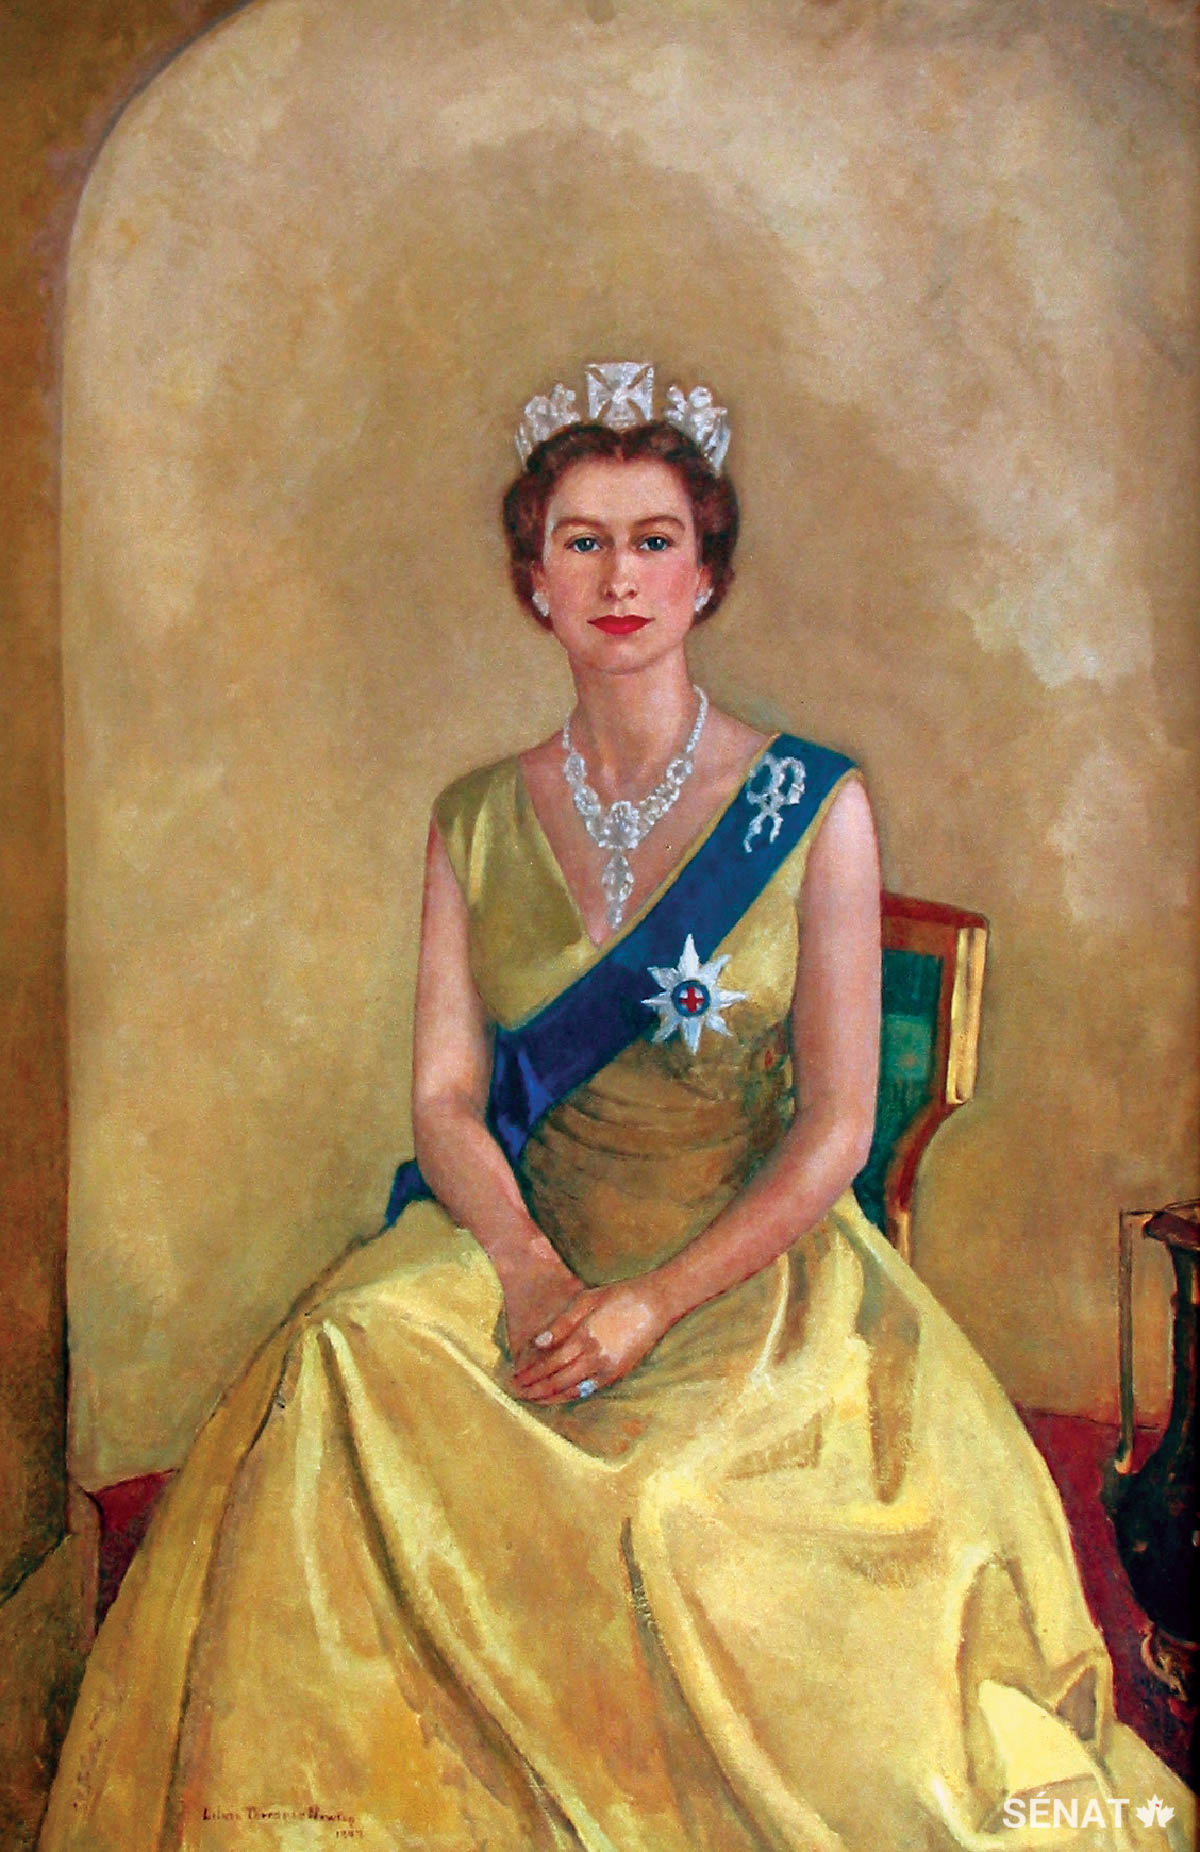 Ce portrait de 1957 représentant la reine Elizabeth II à 31 ans, soit cinq ans après le début de son règne, a été peint par Lilias Torrance Newton. Il s’agit de l’une des deux peintures originales situées dans le foyer du Sénat et la seule qui soit l’œuvre d’un artiste canadien.